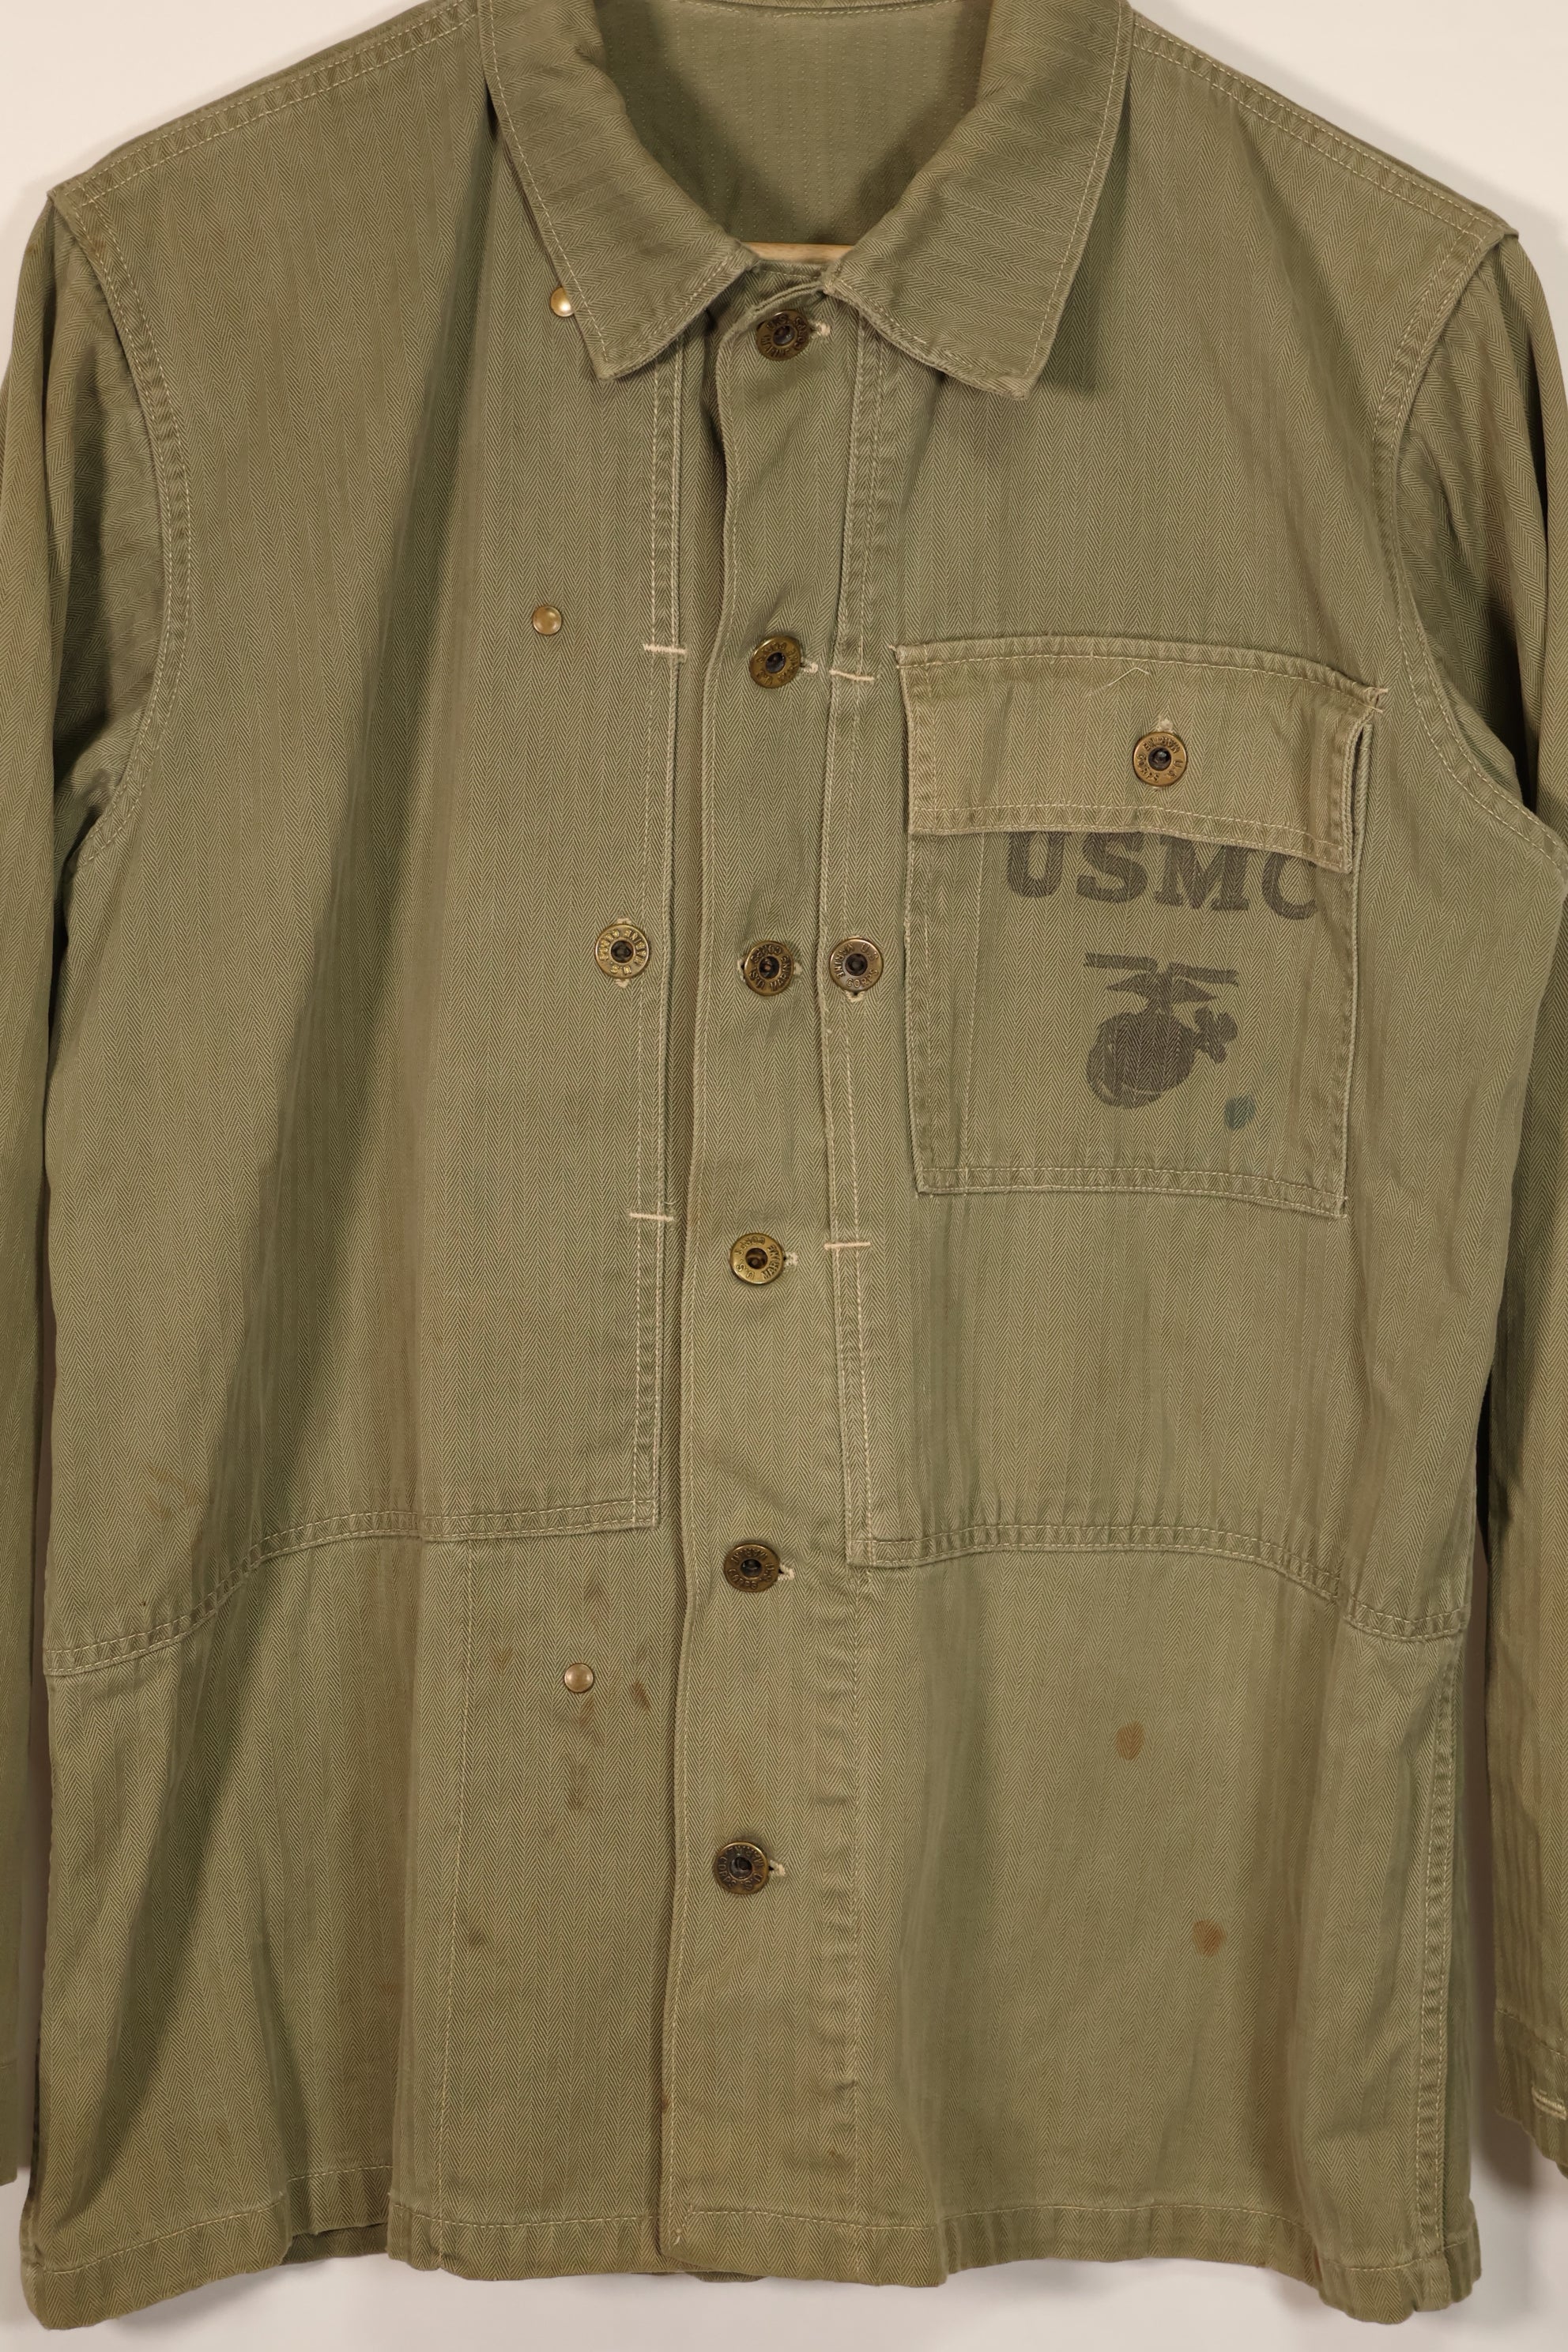 Real U.S. Marine Corps USMC M44 HBT Utility Jacket Used